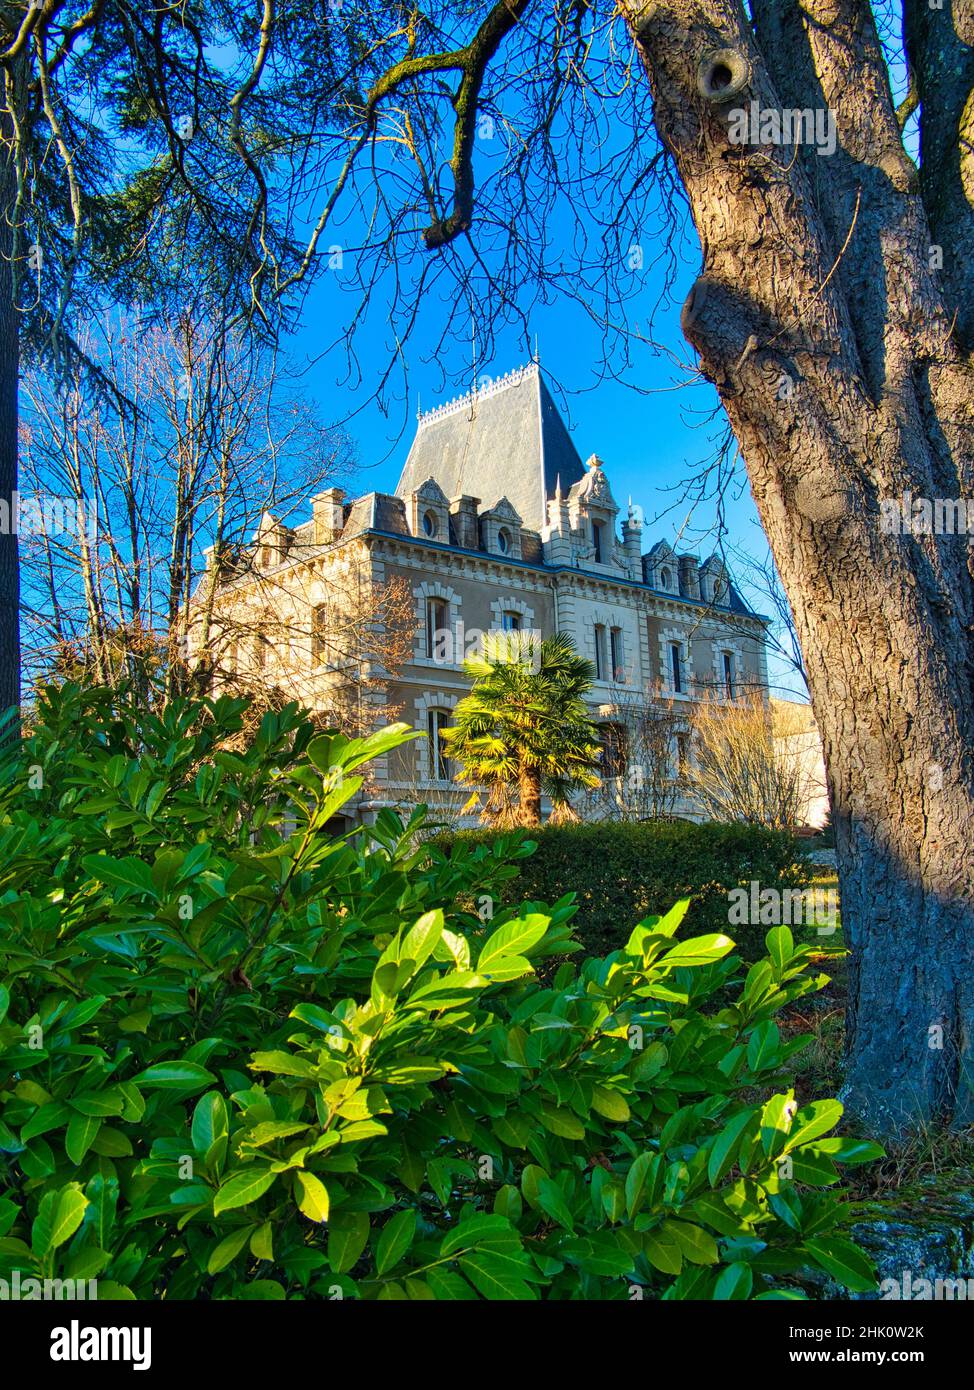 Chateau de Pile, Eymet, Dordogne Department, Nouvelle-Aquitaine, France  Stock Photo - Alamy